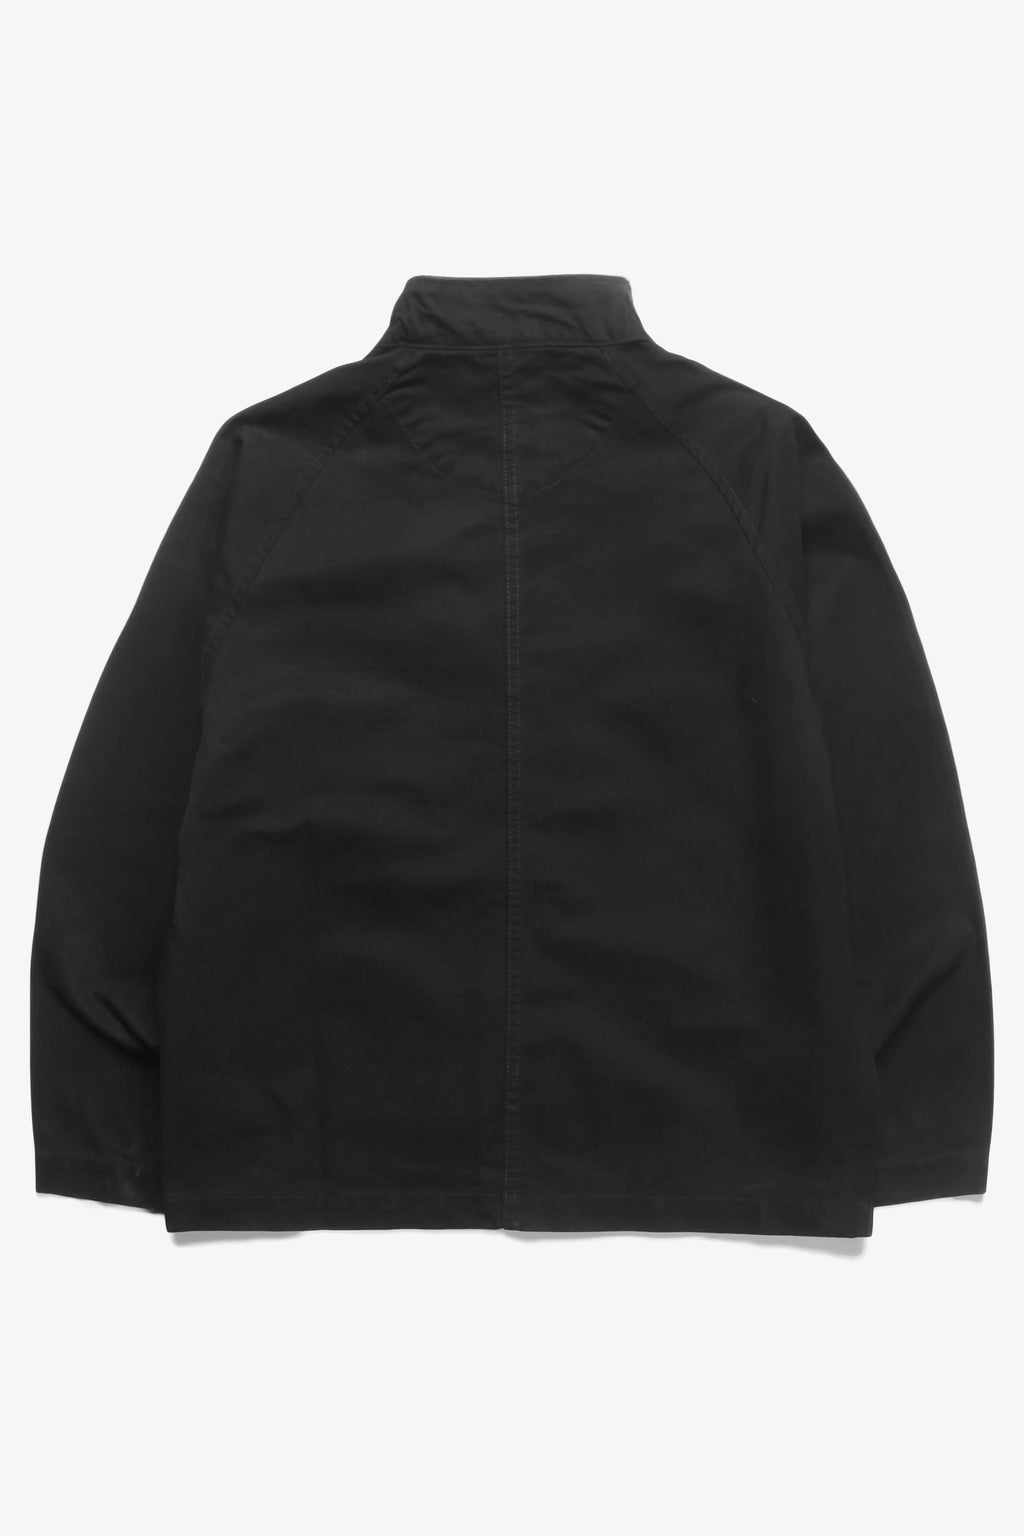 Blacksmith - Left Handed Work Jacket - Black